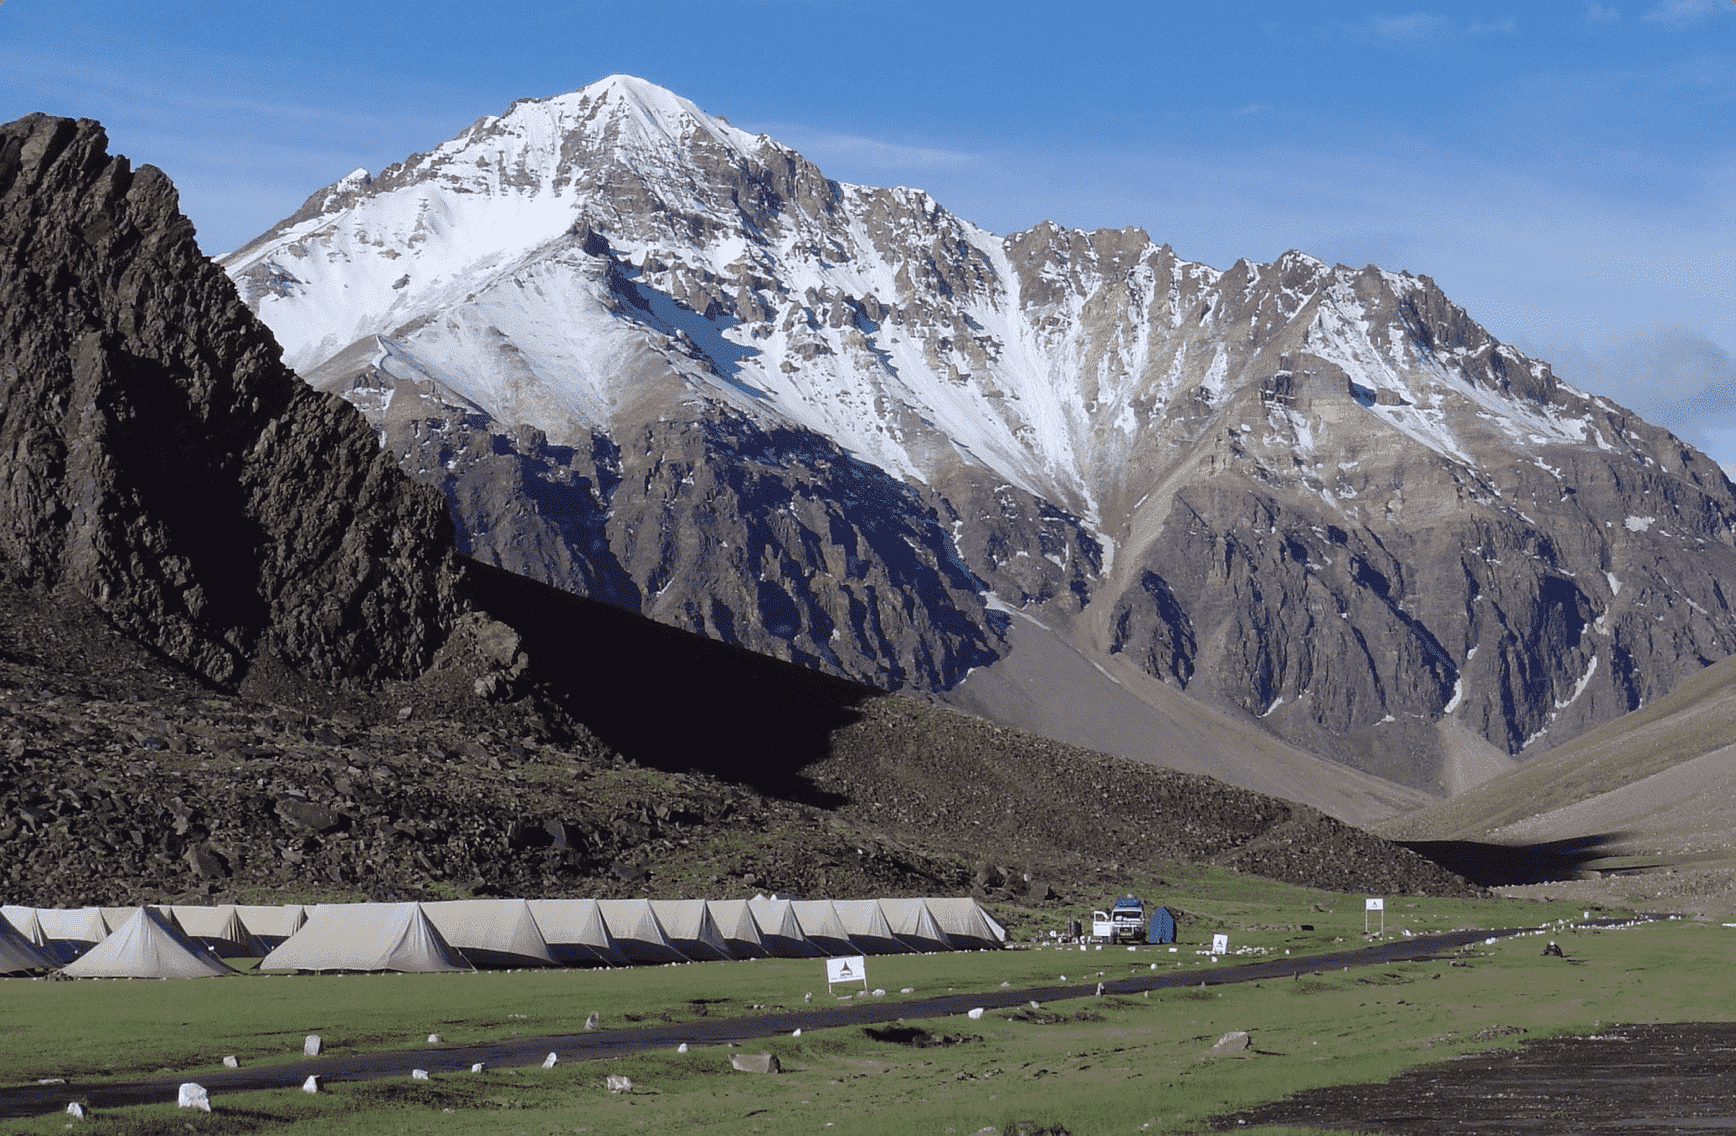 Manali-Rohtang Pass Tour